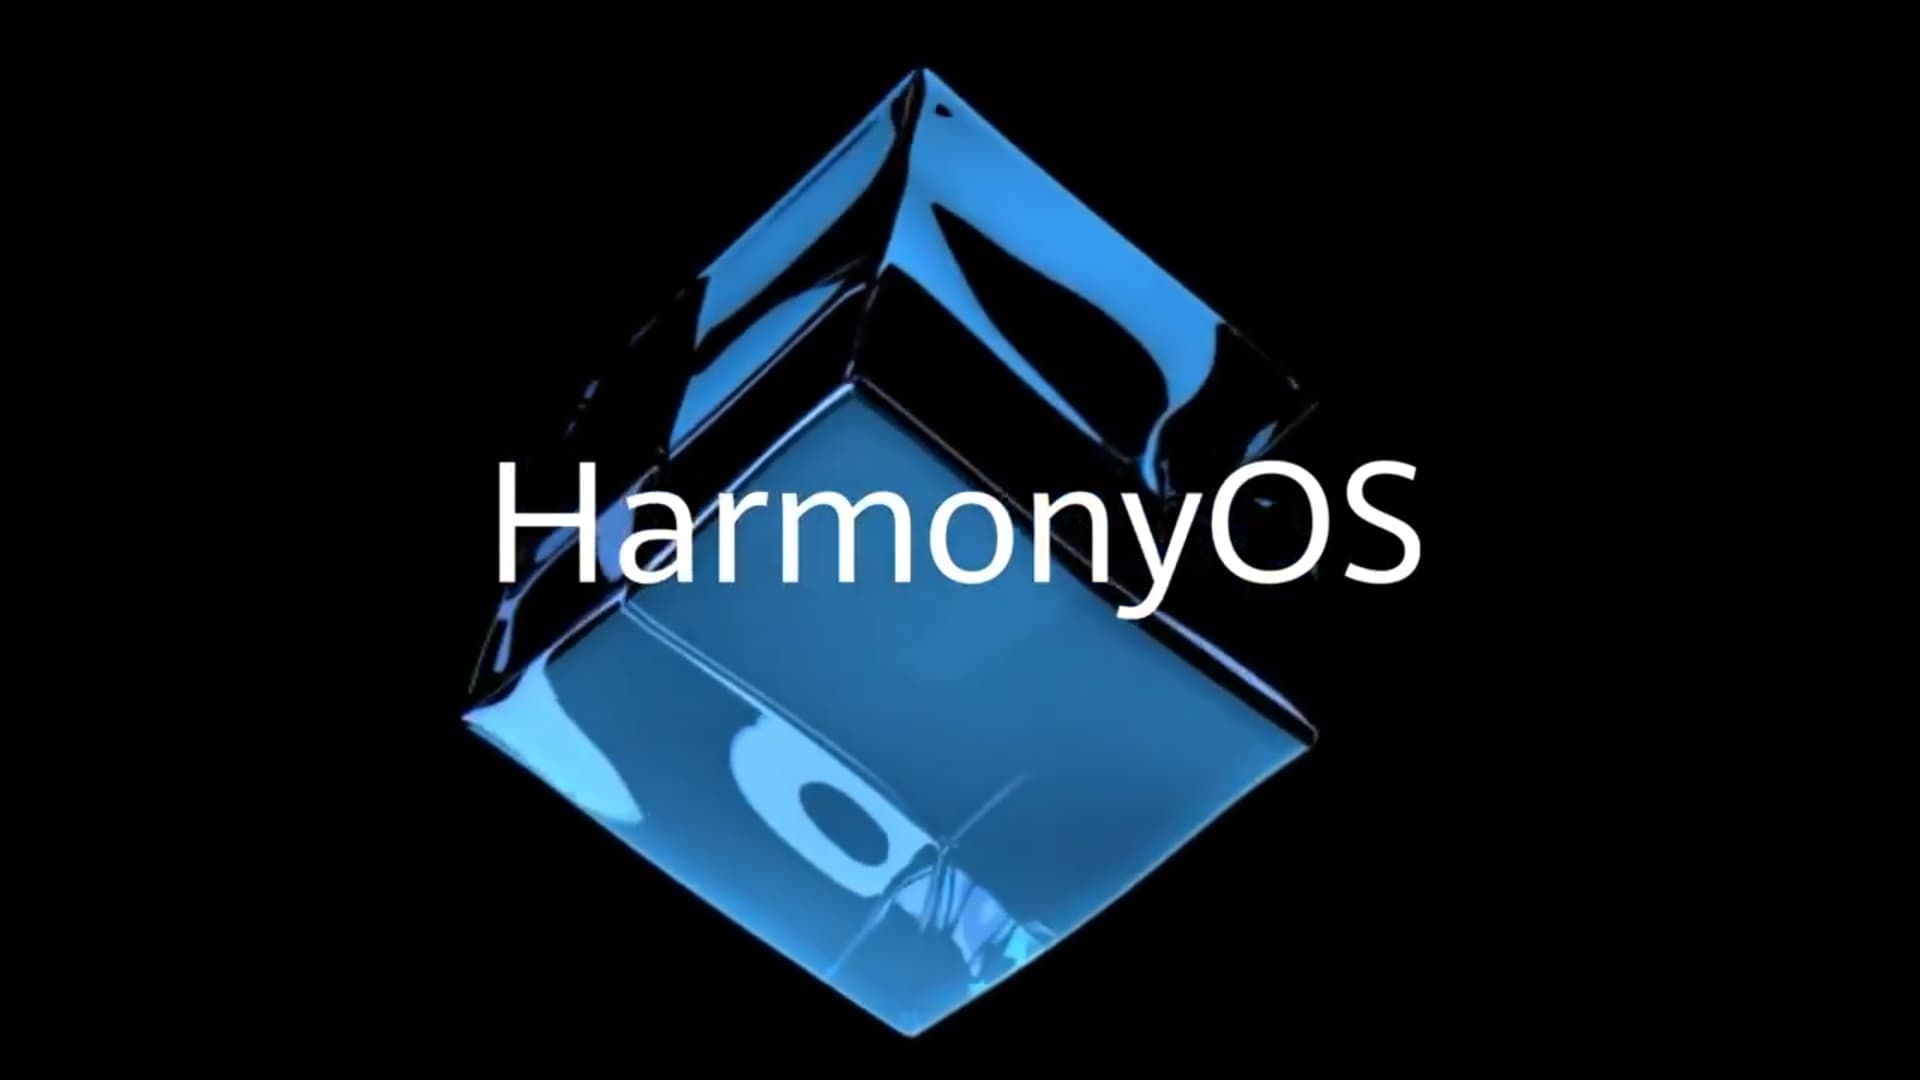 HarmonyOS. Huawei